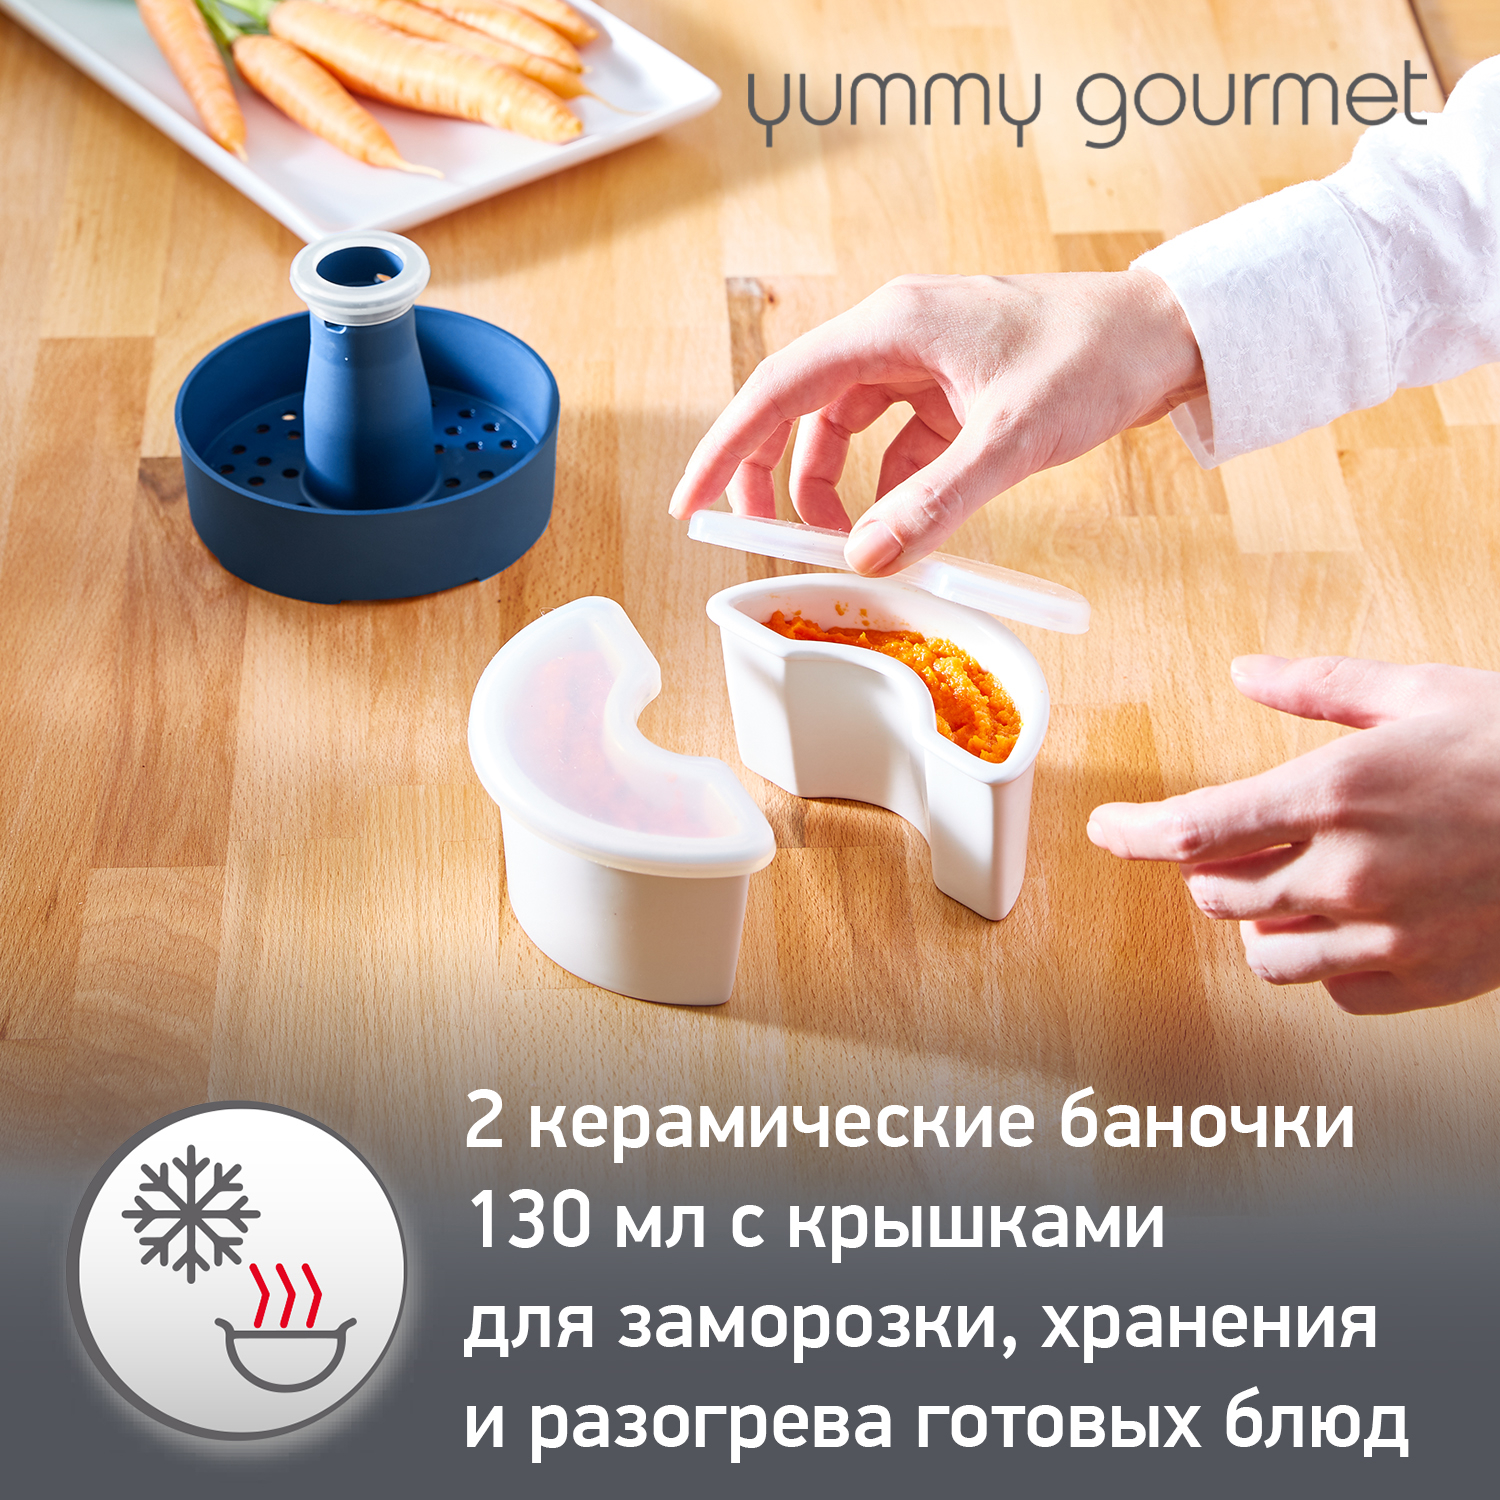 Универсальный набор 4 в 1 Moulinex Yummy Gourmet DD55W110, для детского питания